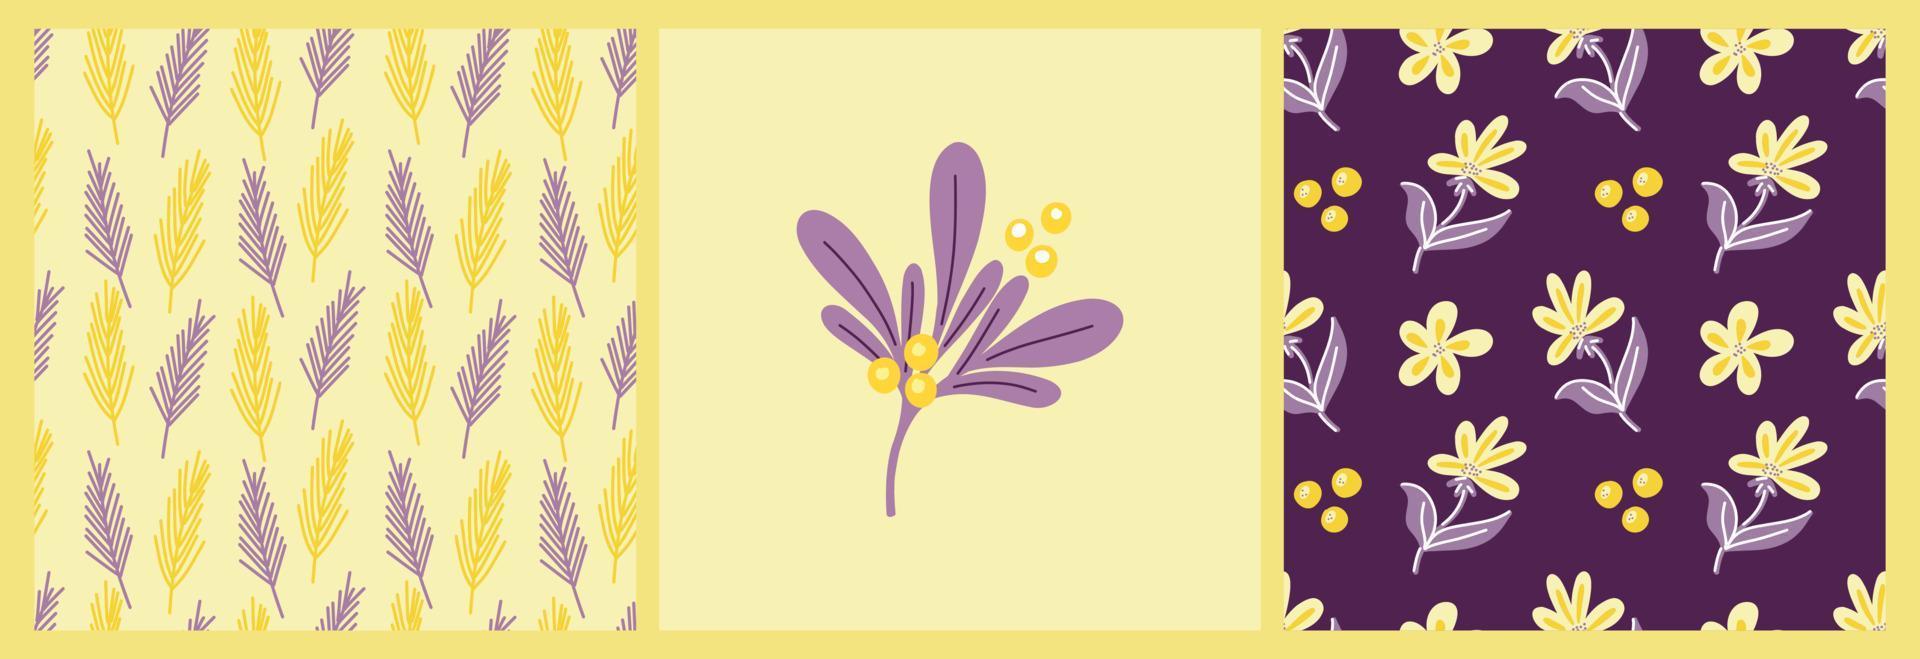 Vektorsatz von Mustern mit lila und gelber abstrakter Verflechtung von Blättern und Blumen auf einem farbigen Hintergrund. Botanisches Muster für Postkarten, Geschenke, Feiertage, Stoffe, Verpackungen vektor